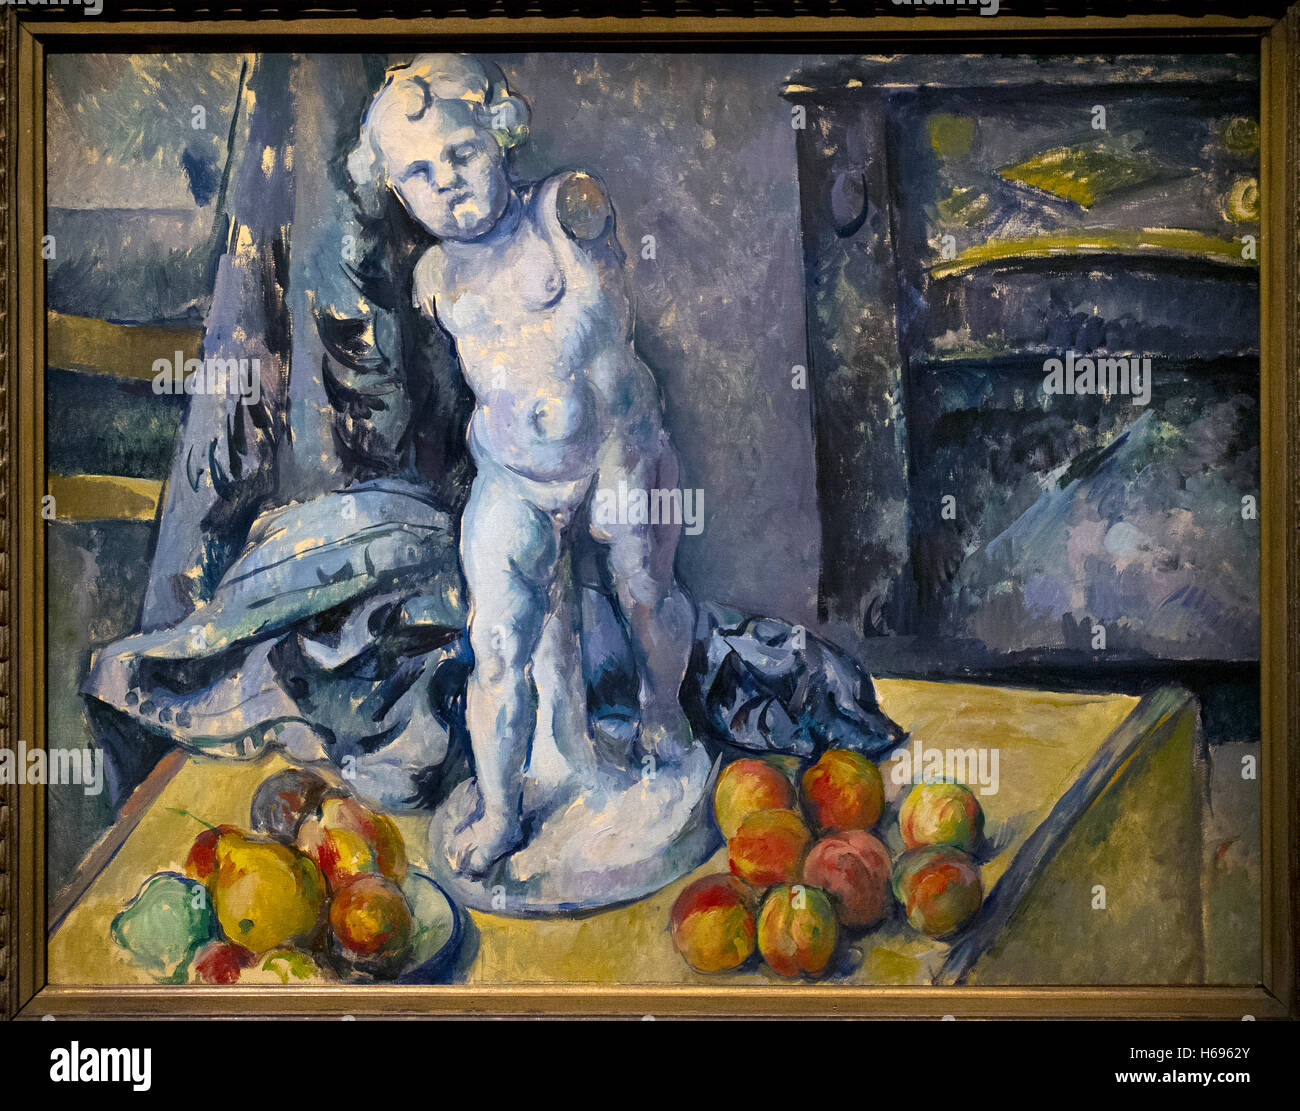 Paul Cézanne (1839-1906). Peintre post-impressionniste français. La nature morte avec Statuette, années 1890. Musée national. Stockholm. La Suède. Banque D'Images